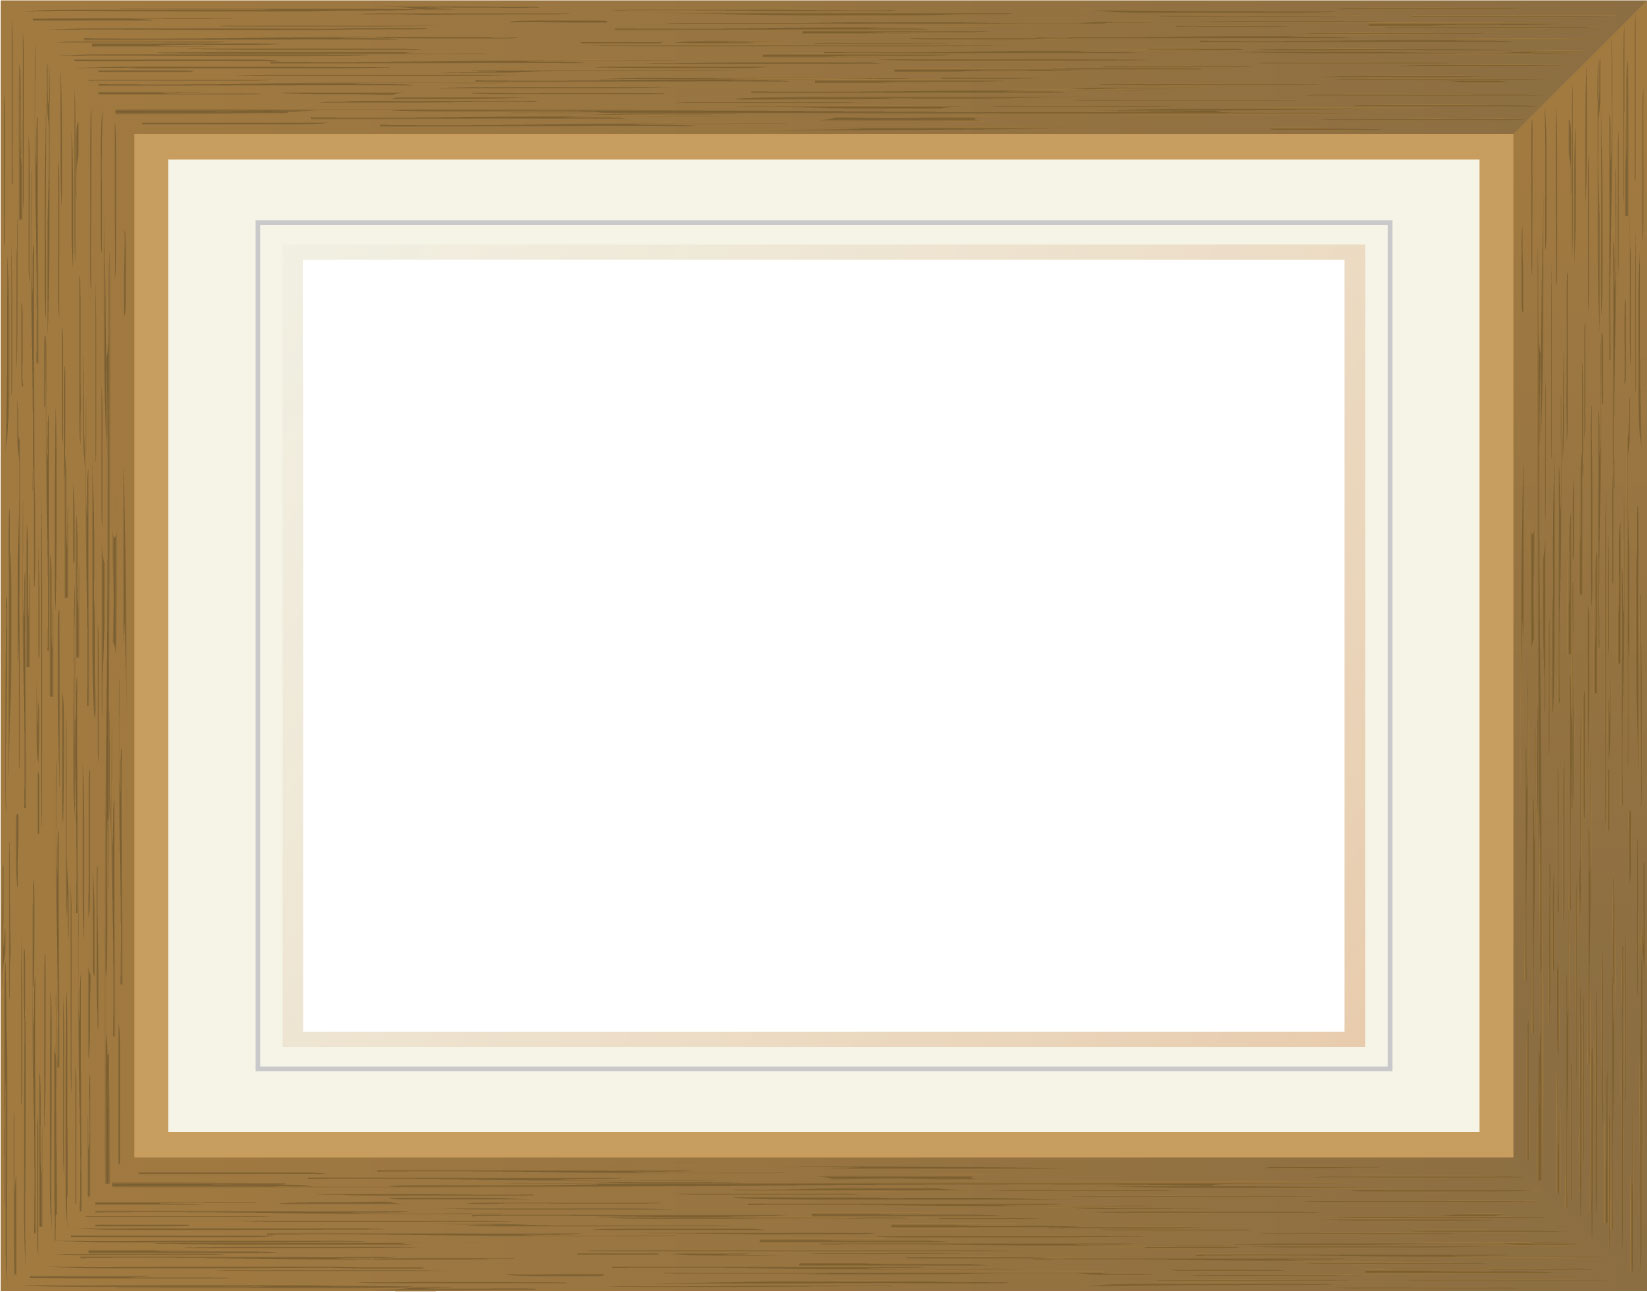 フレーム 囲い枠のイラストno 384 額縁 木製 木目 無料のフリー素材集